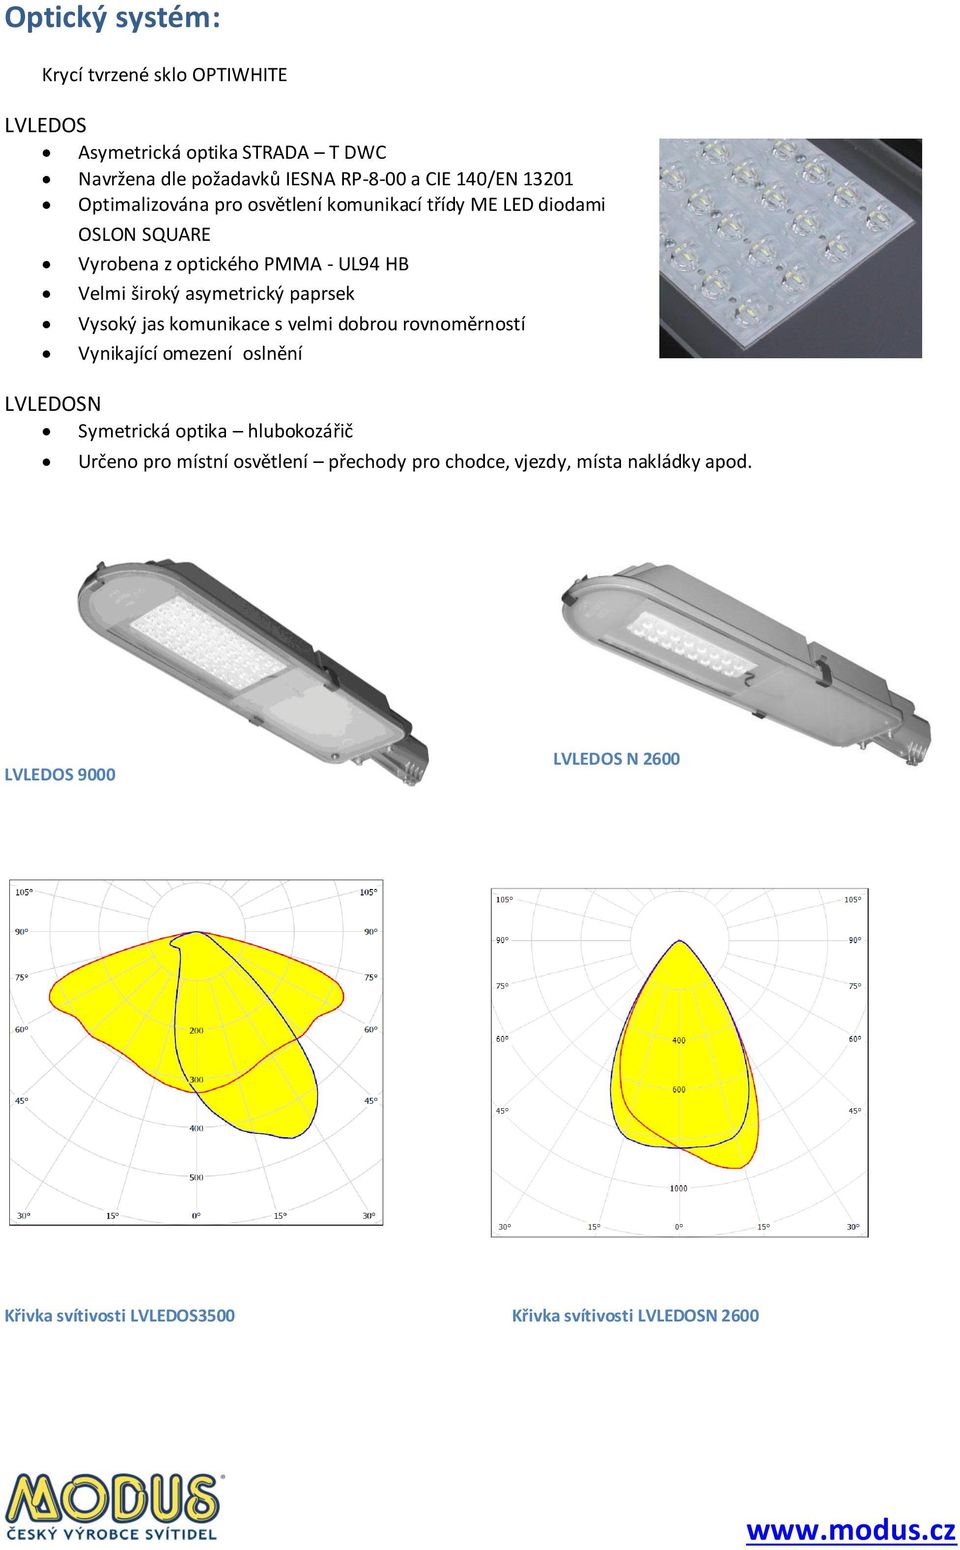 MODUS LV LEDOS LV LEDOS. Moderní LED svítidlo pro veřejné osvětlení. - PDF  Stažení zdarma